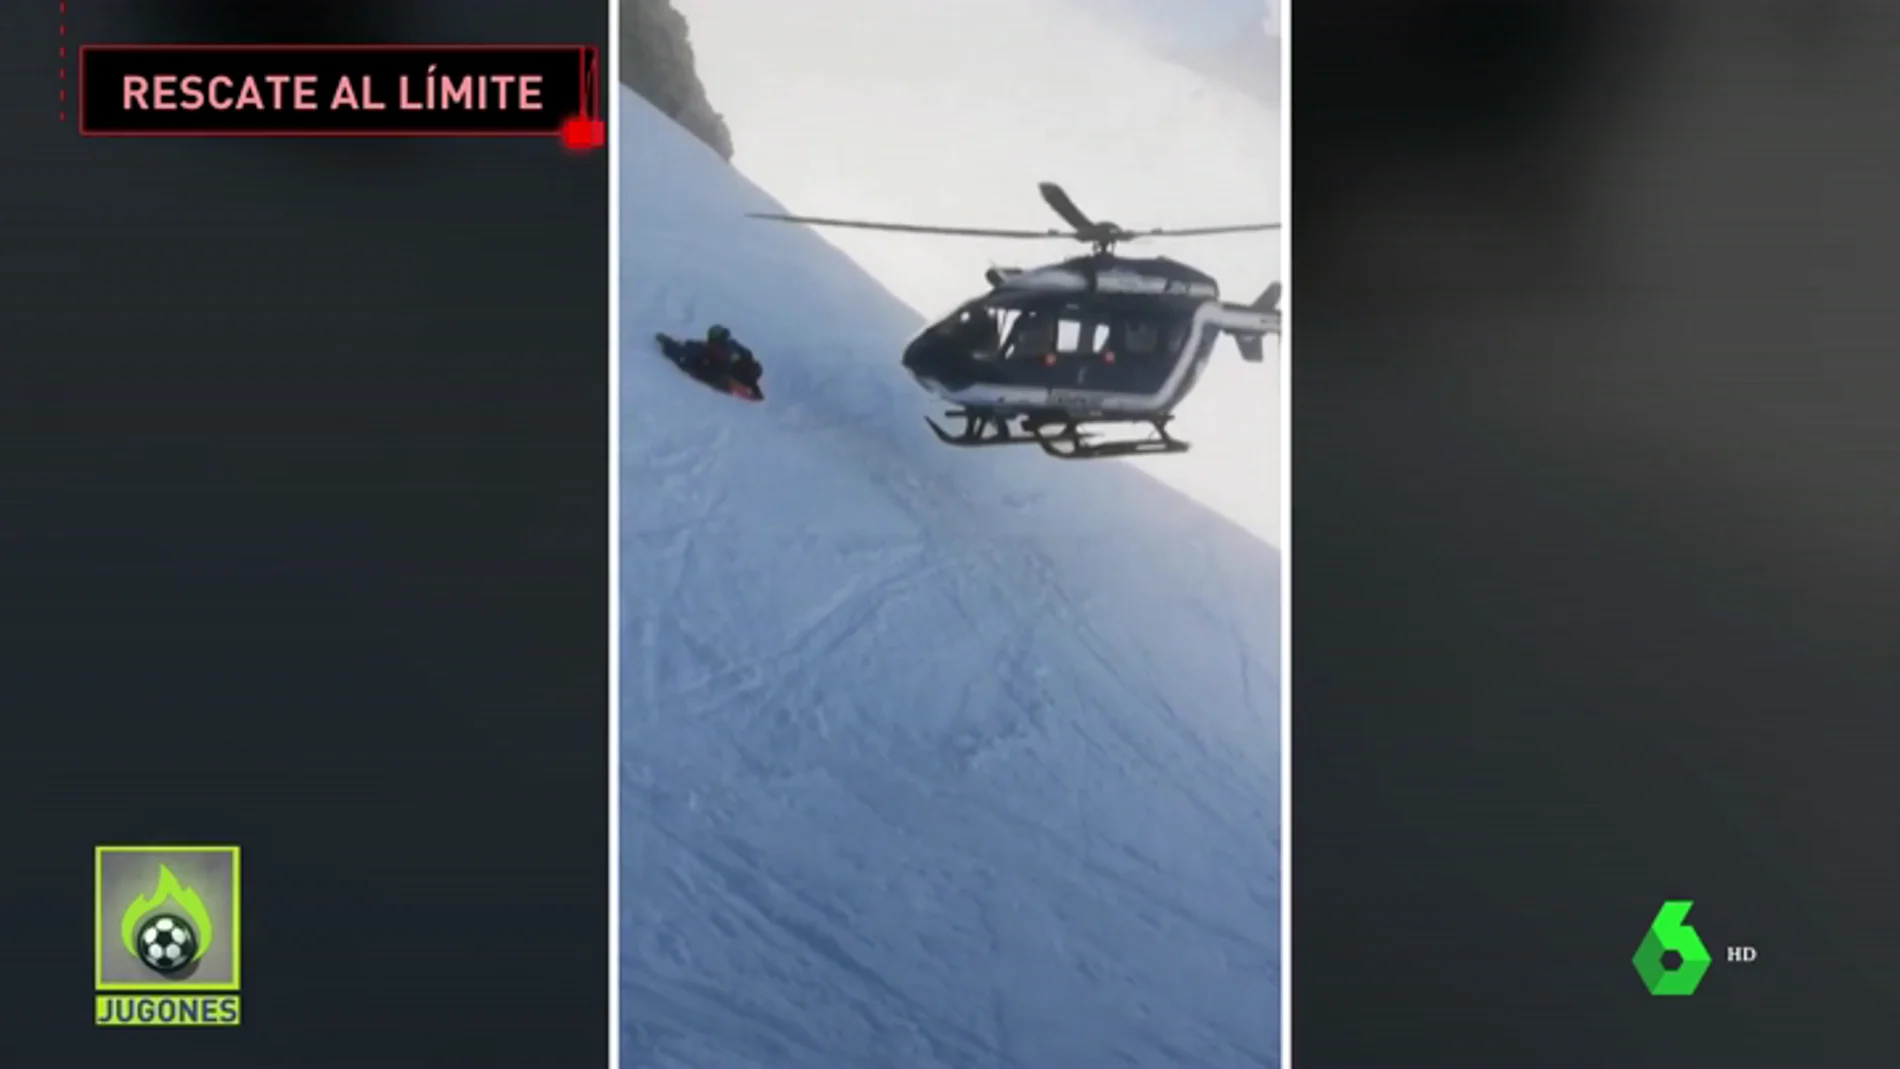 Rescate extremo en helicóptero de un esquiador accidentado en los Alpes